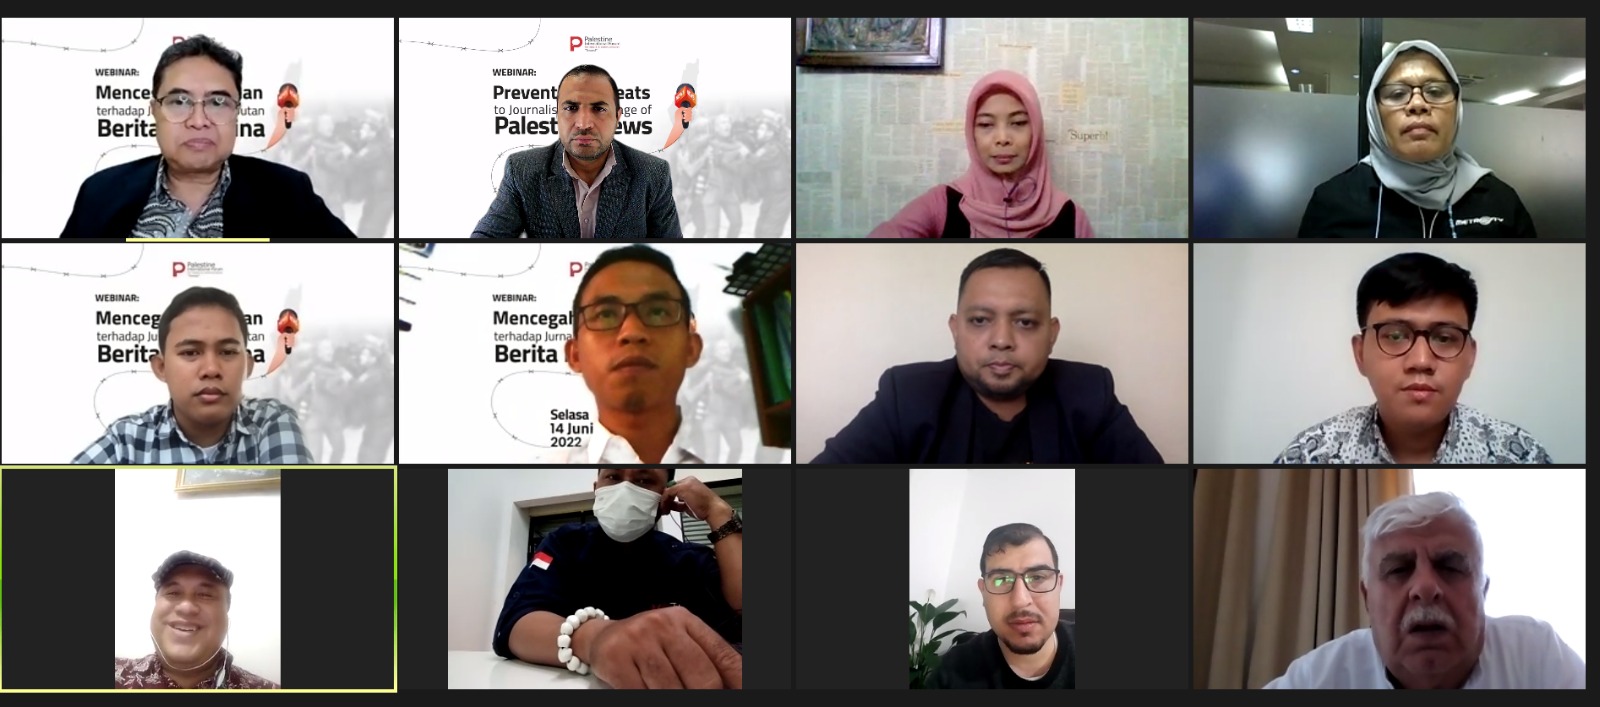 منتدى فلسطين للإعلام يعقد ورشة مع إعلاميين أندونيسيين